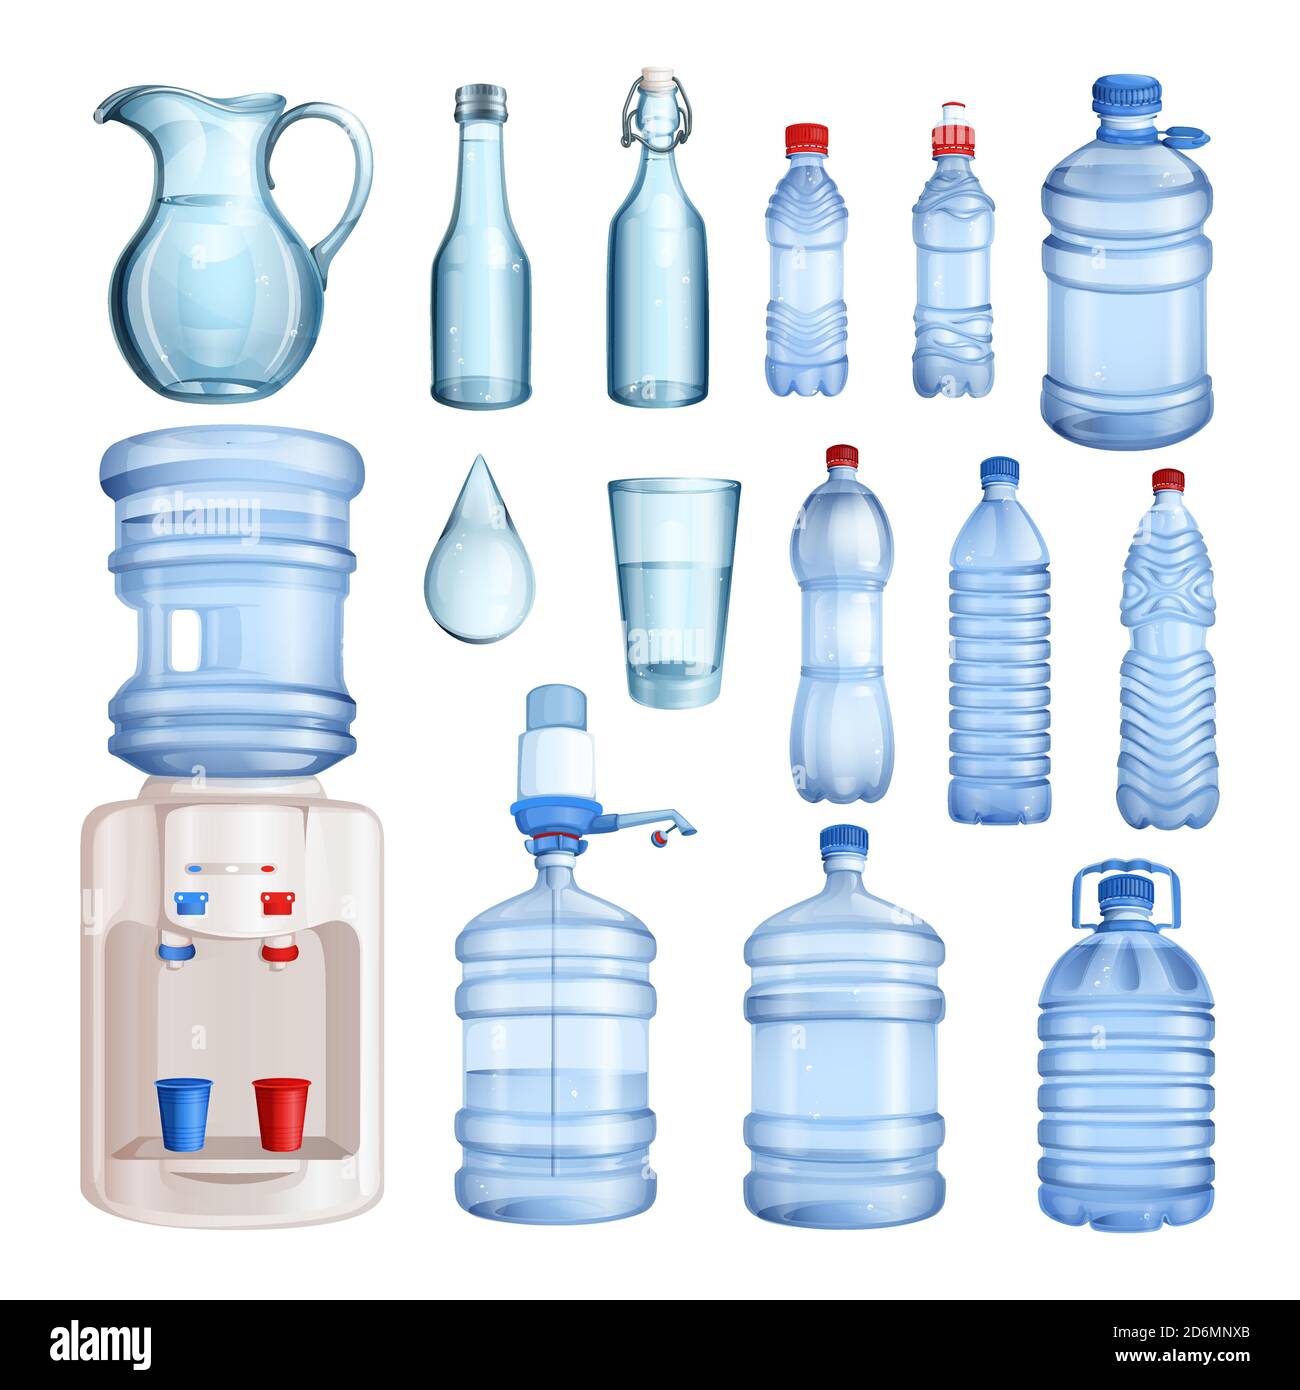 Wasser in Kunststoff- und Glasflaschen. Vektor isolierte Objekte gesetzt. Abbildung: Reines Mineralwasser. Stock Vektor